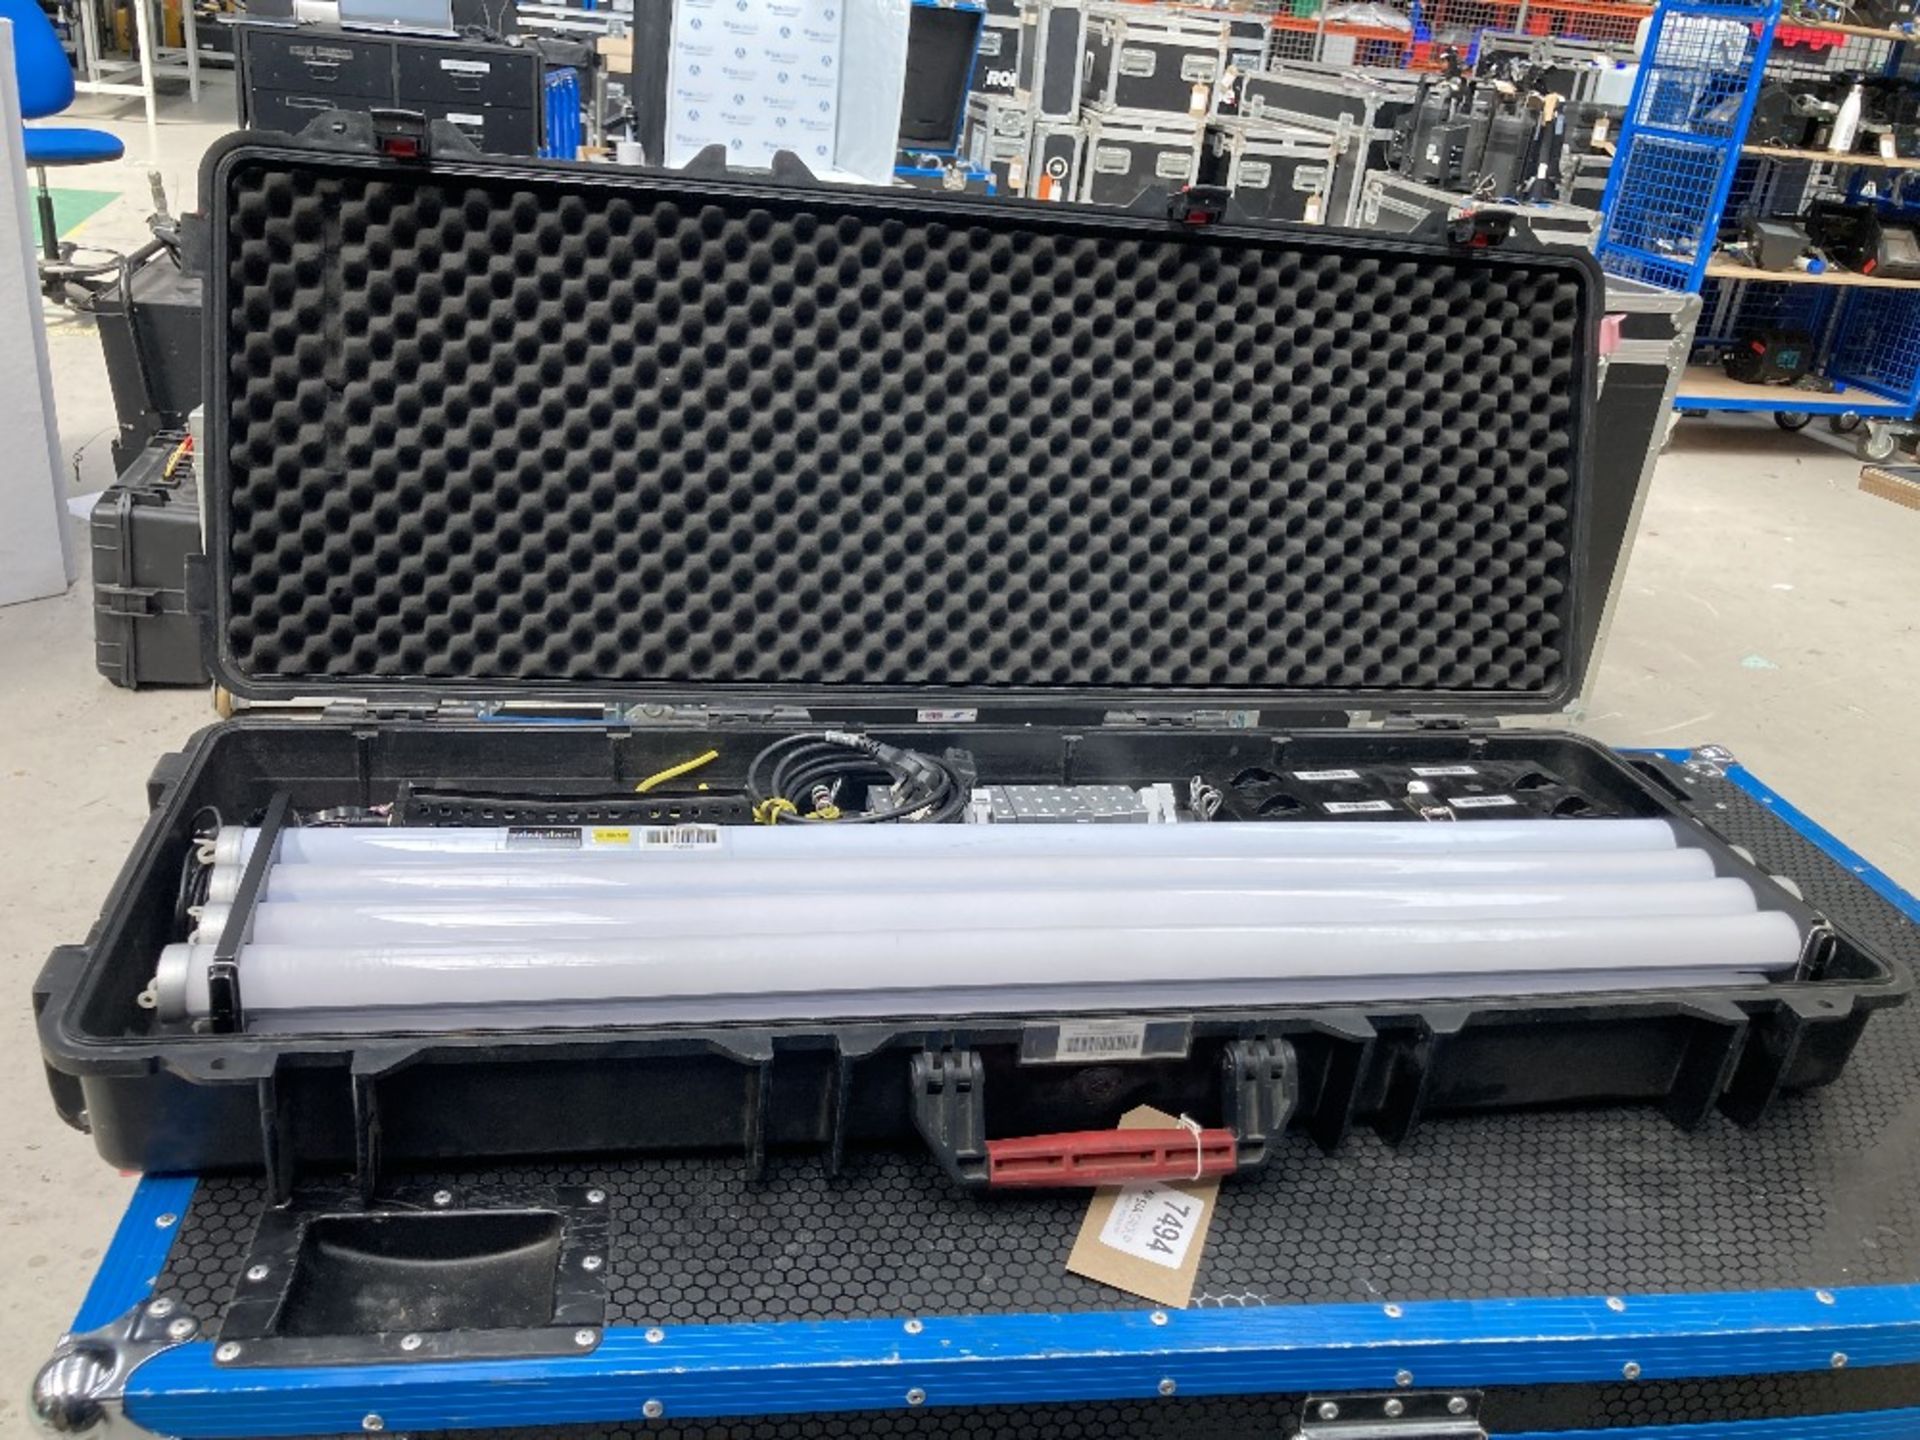 Astera AX1 Tubes 8-Head Lighting Kit & Heavy Duty Peli Case